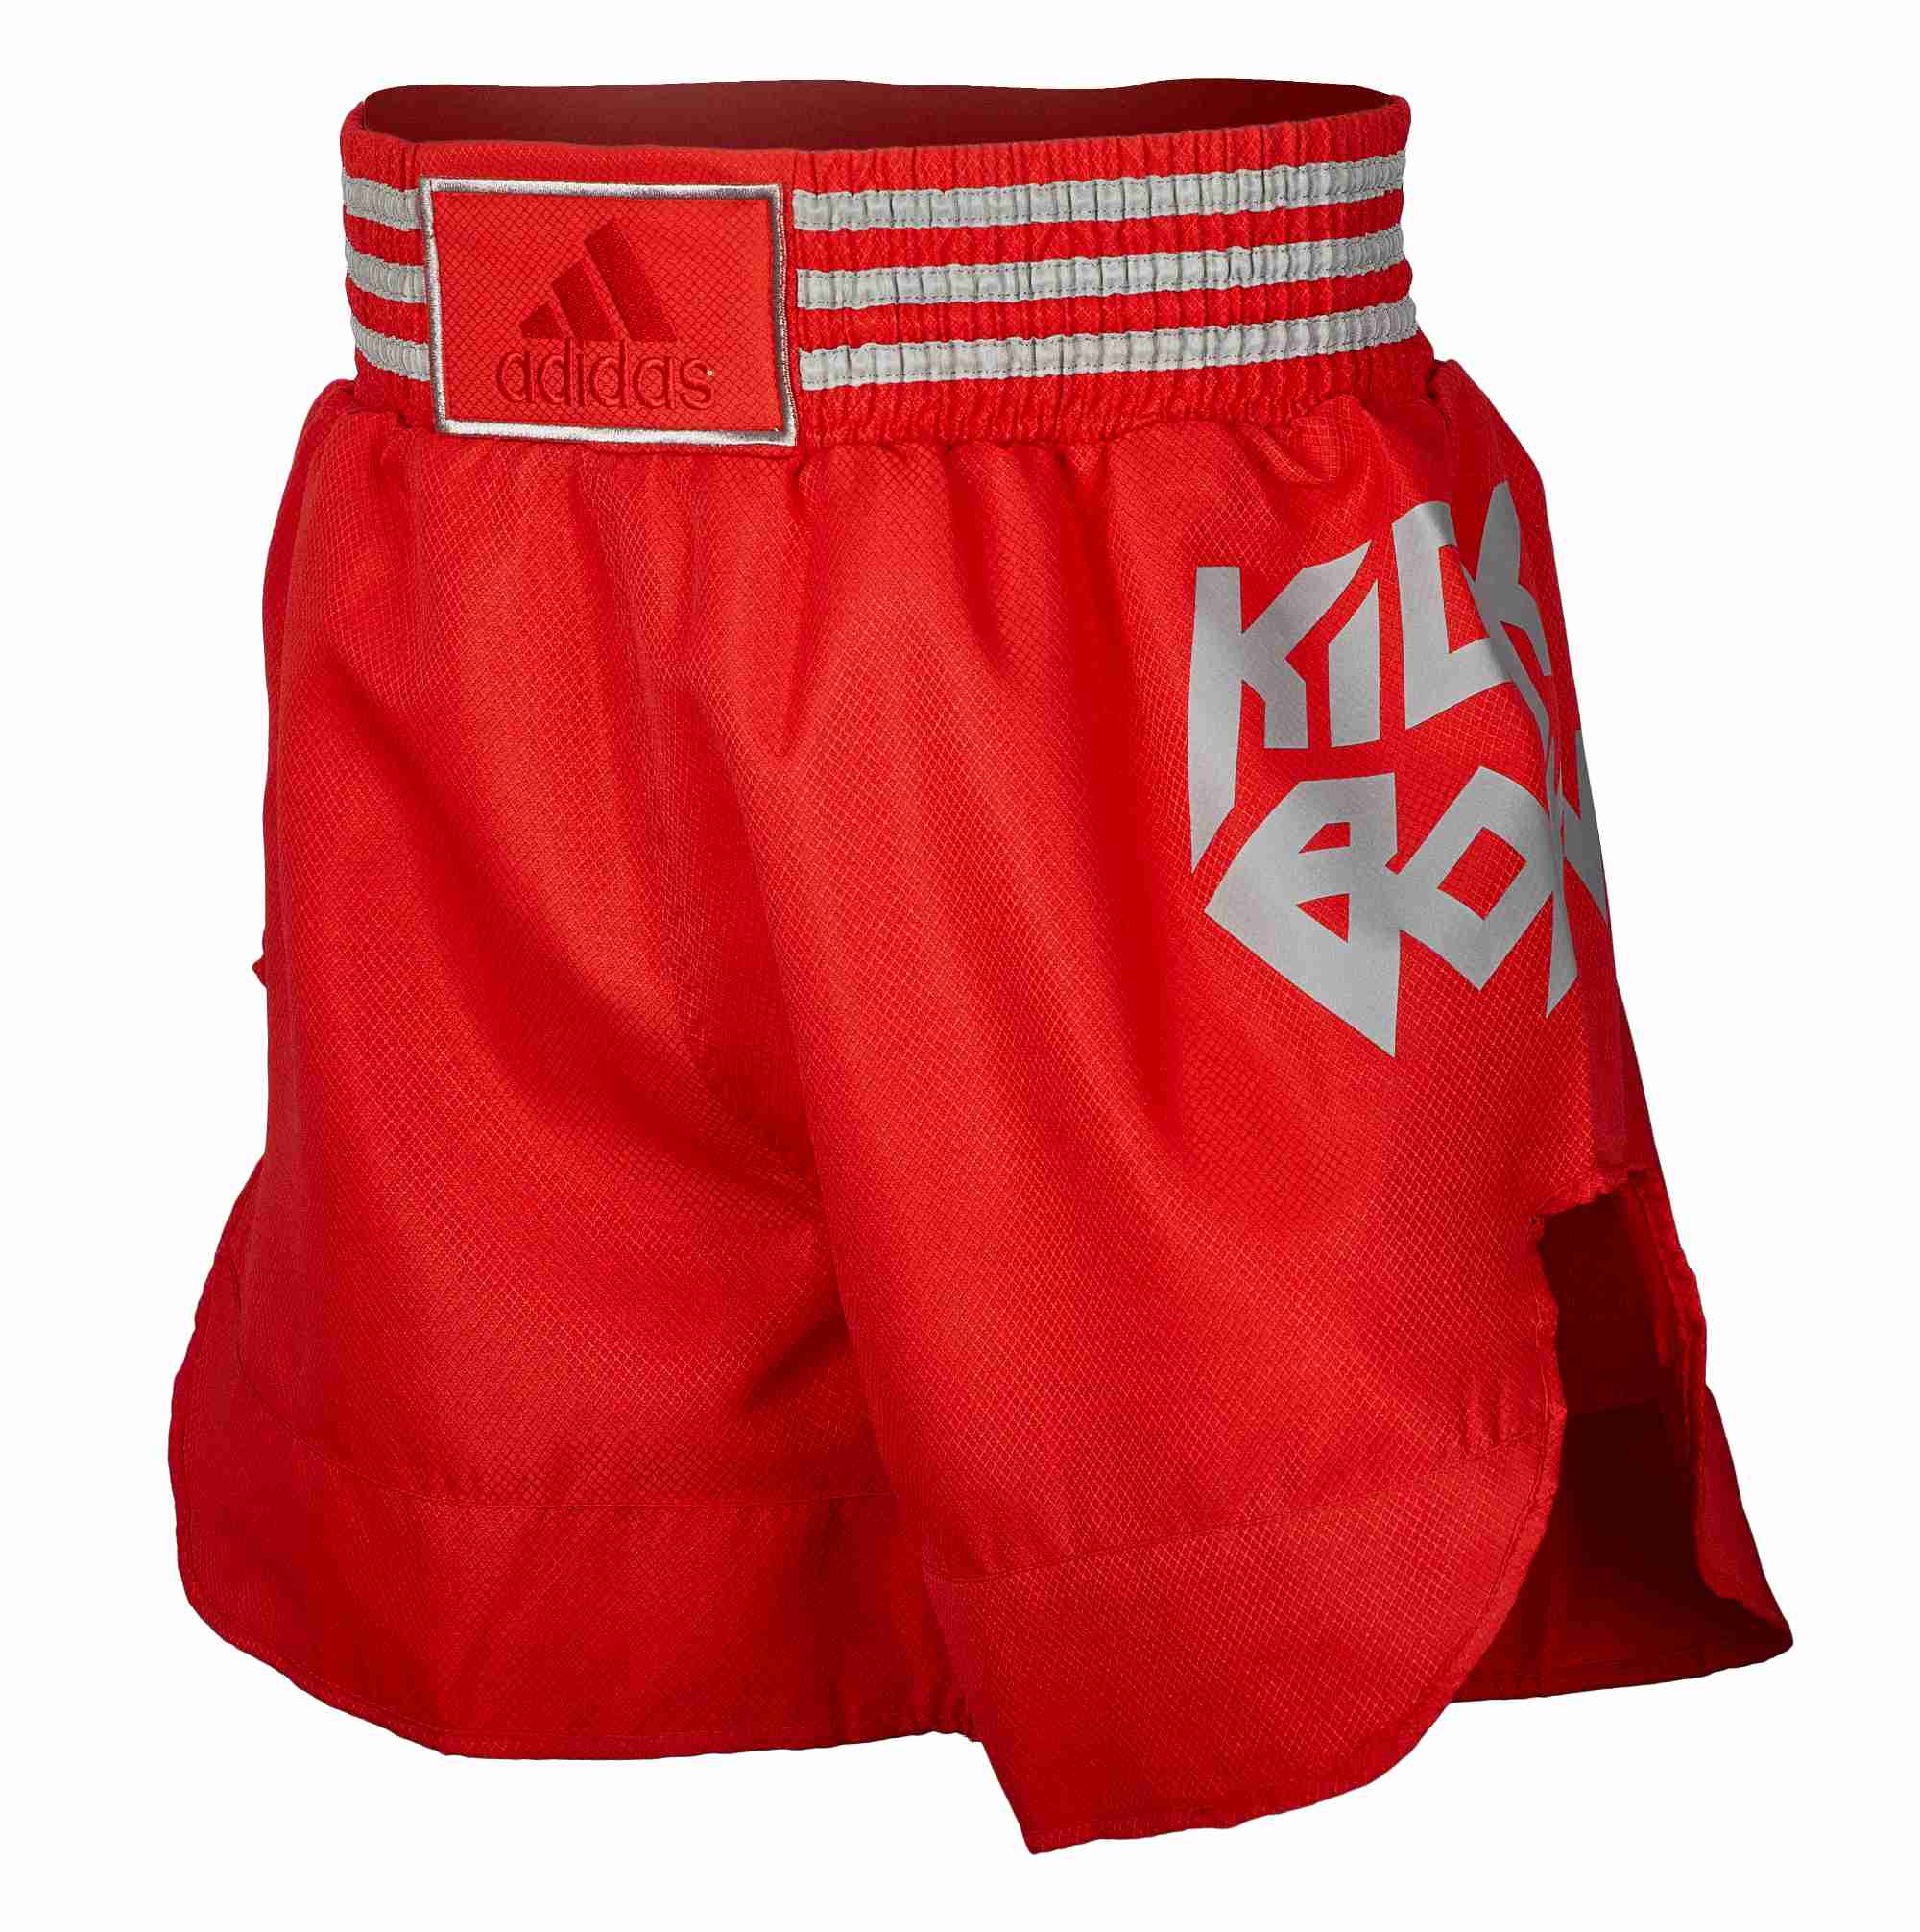 adidas Kick Boxing Shorts ADISKB02 red/silver